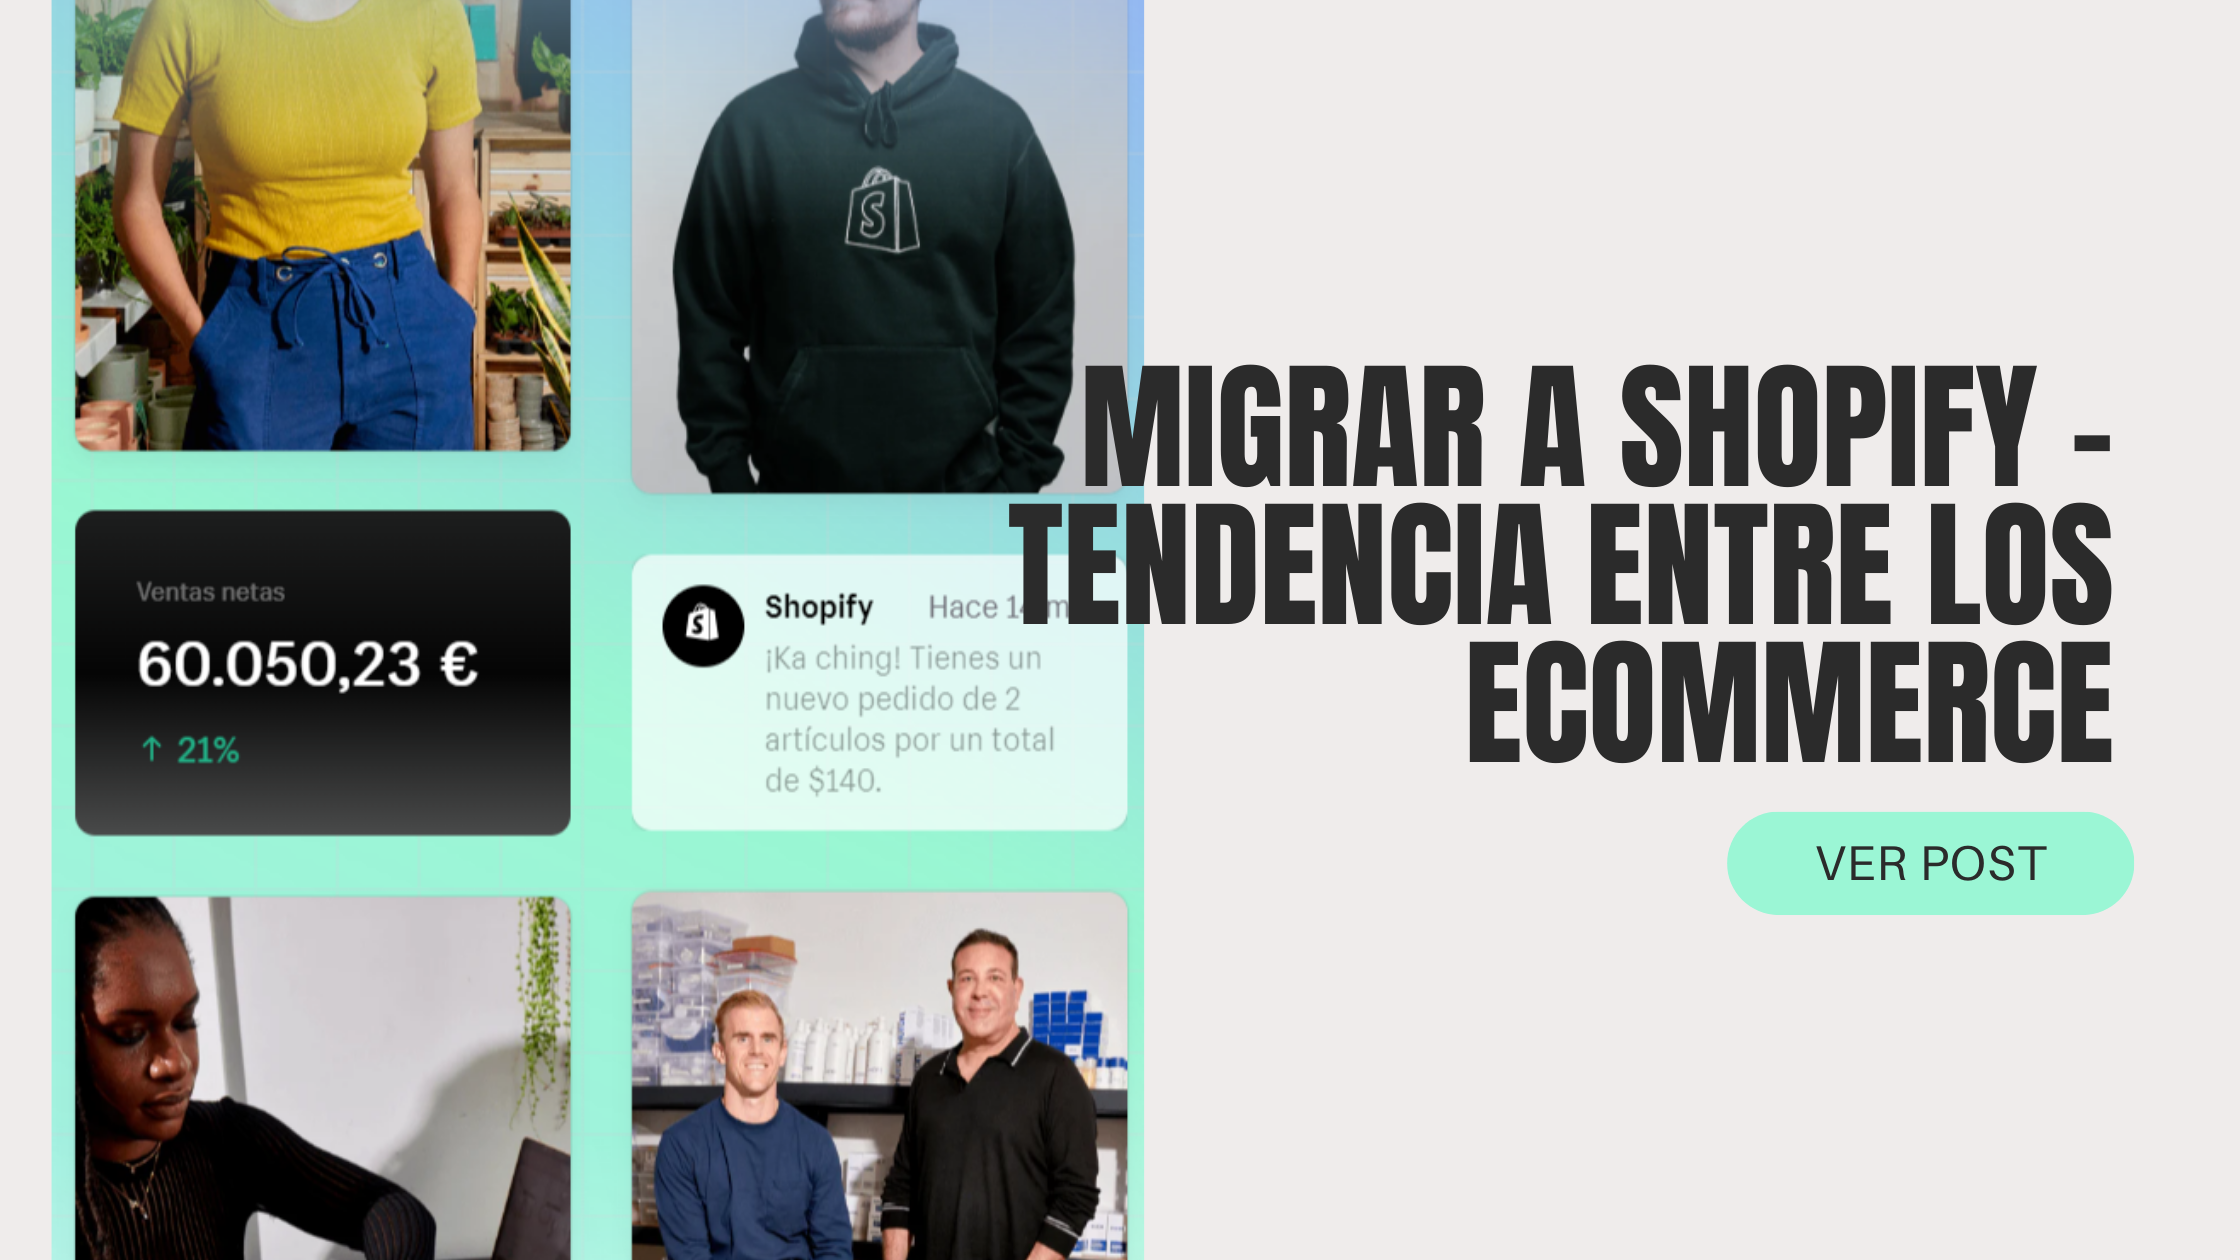 Migrar a Shopify - tendencia entre los eCommerce